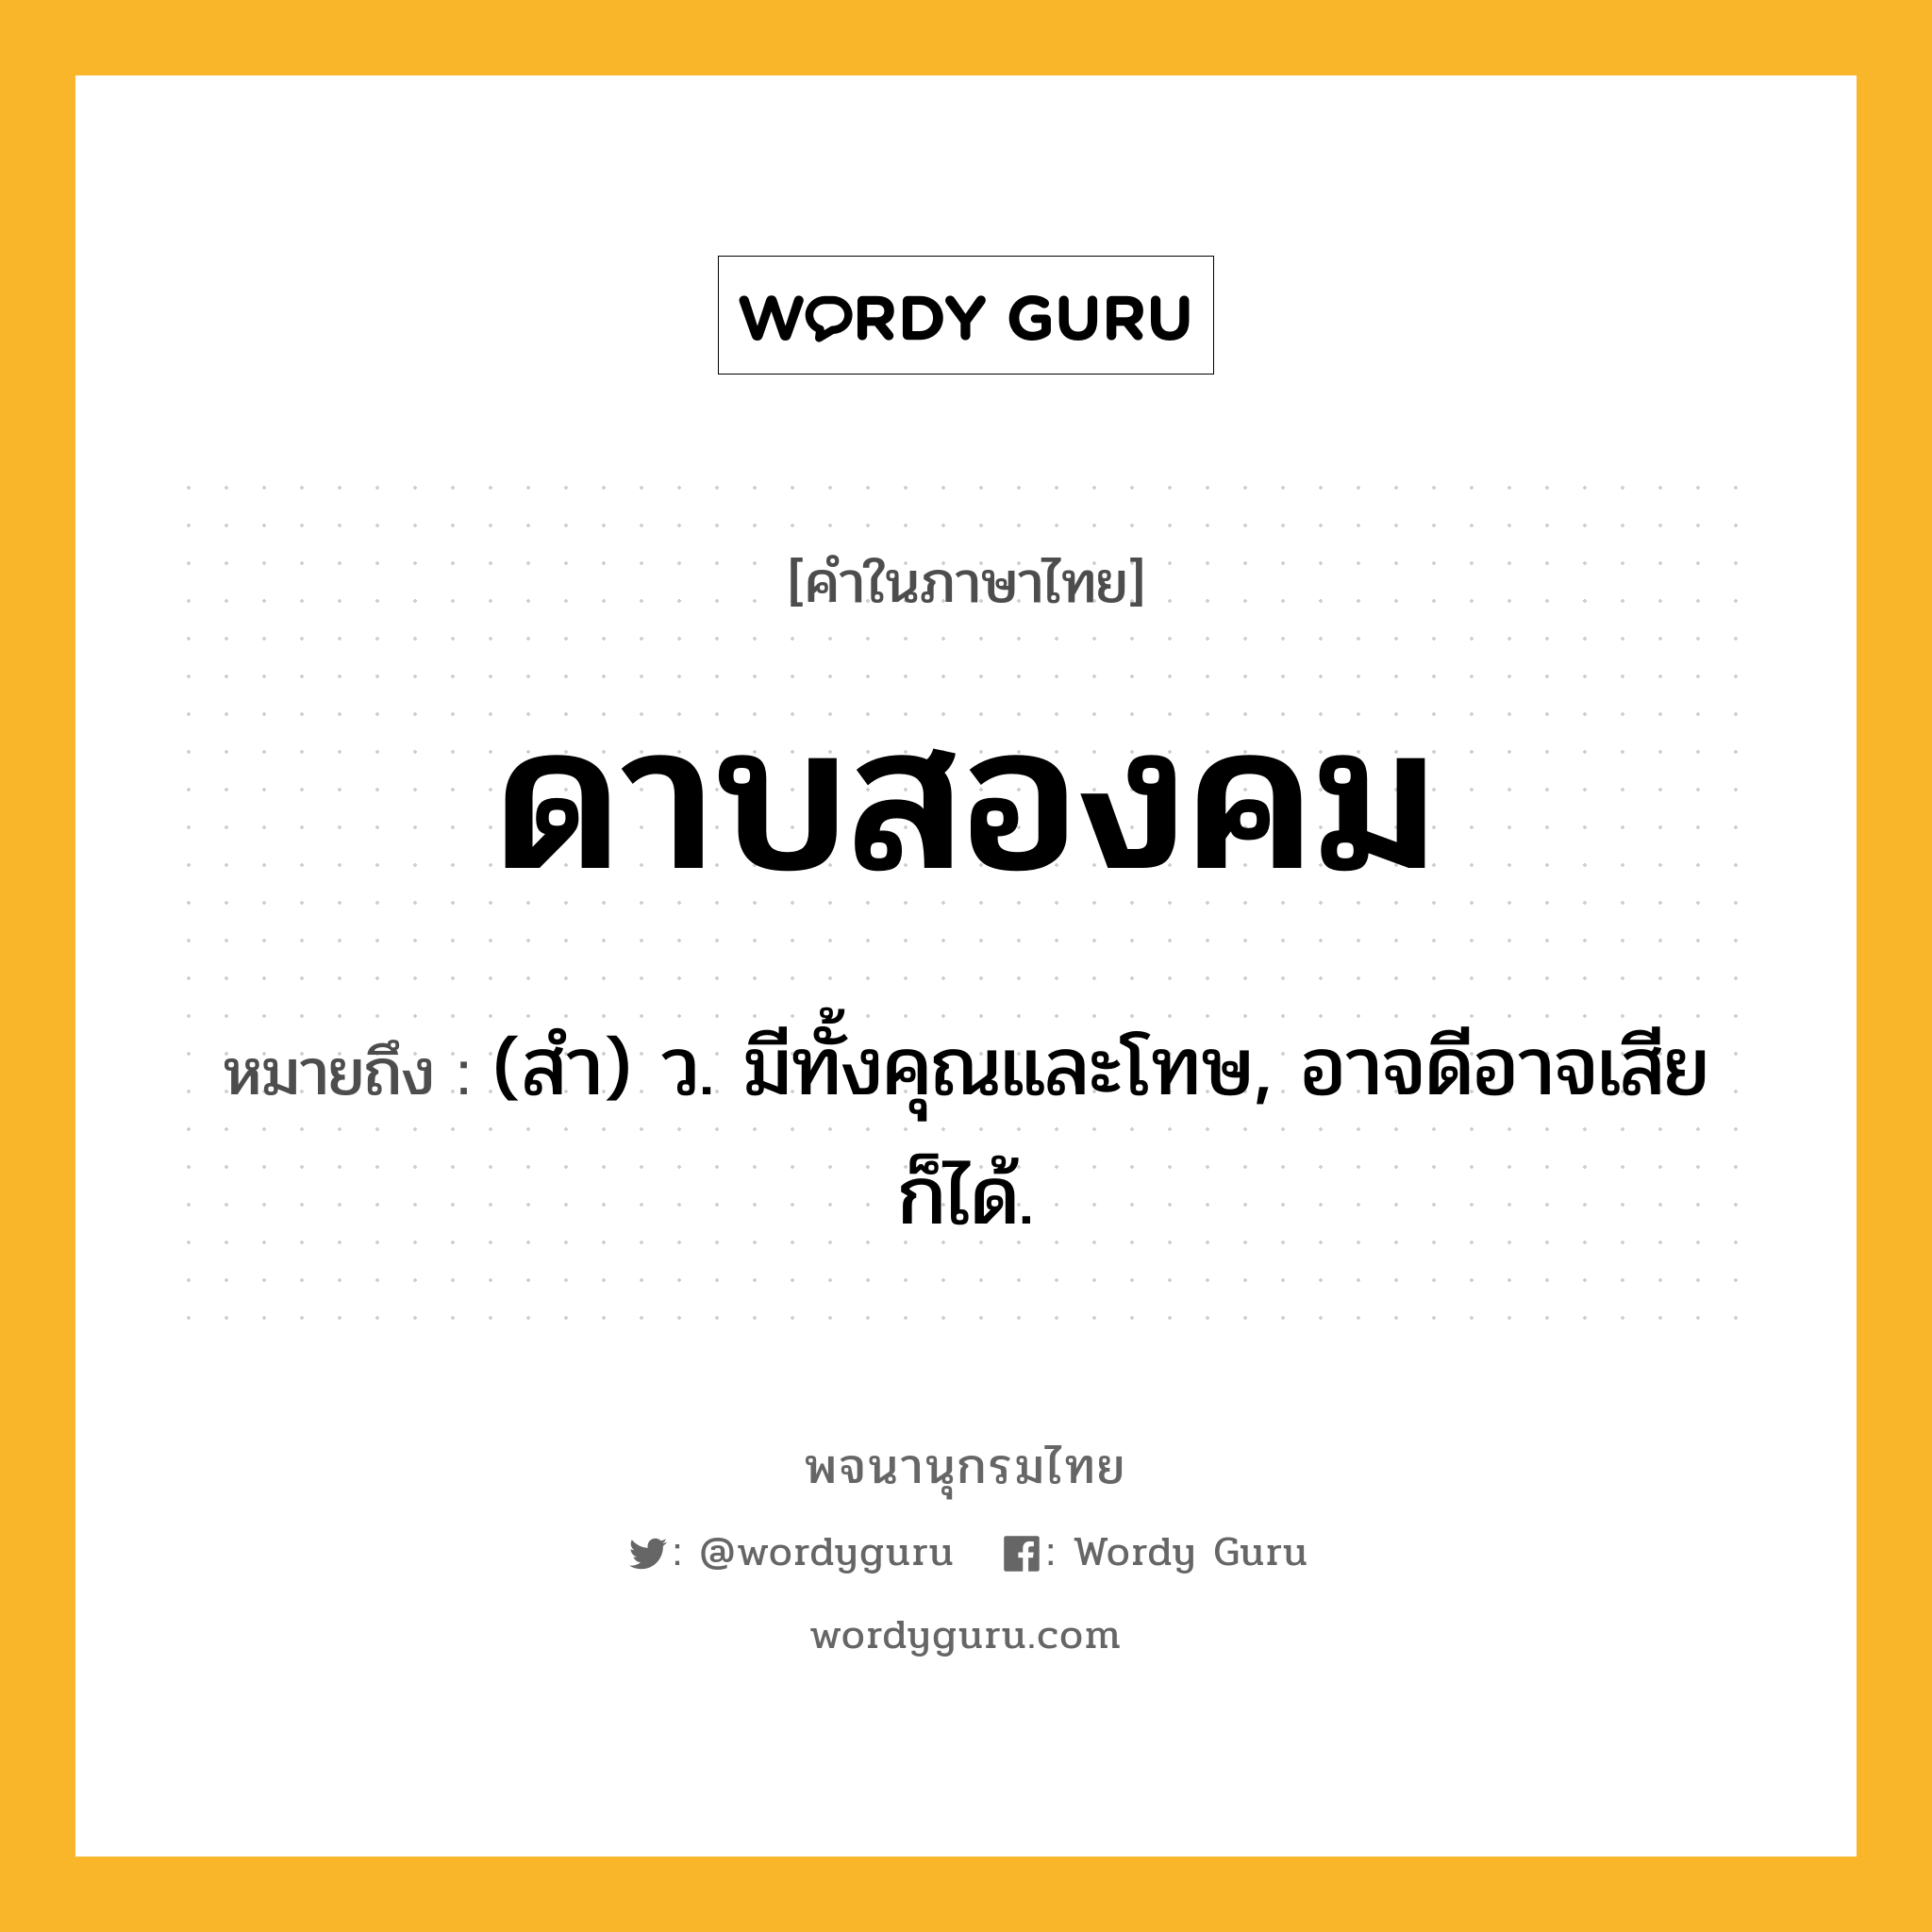 ดาบสองคม ความหมาย หมายถึงอะไร?, คำในภาษาไทย ดาบสองคม หมายถึง (สํา) ว. มีทั้งคุณและโทษ, อาจดีอาจเสียก็ได้.